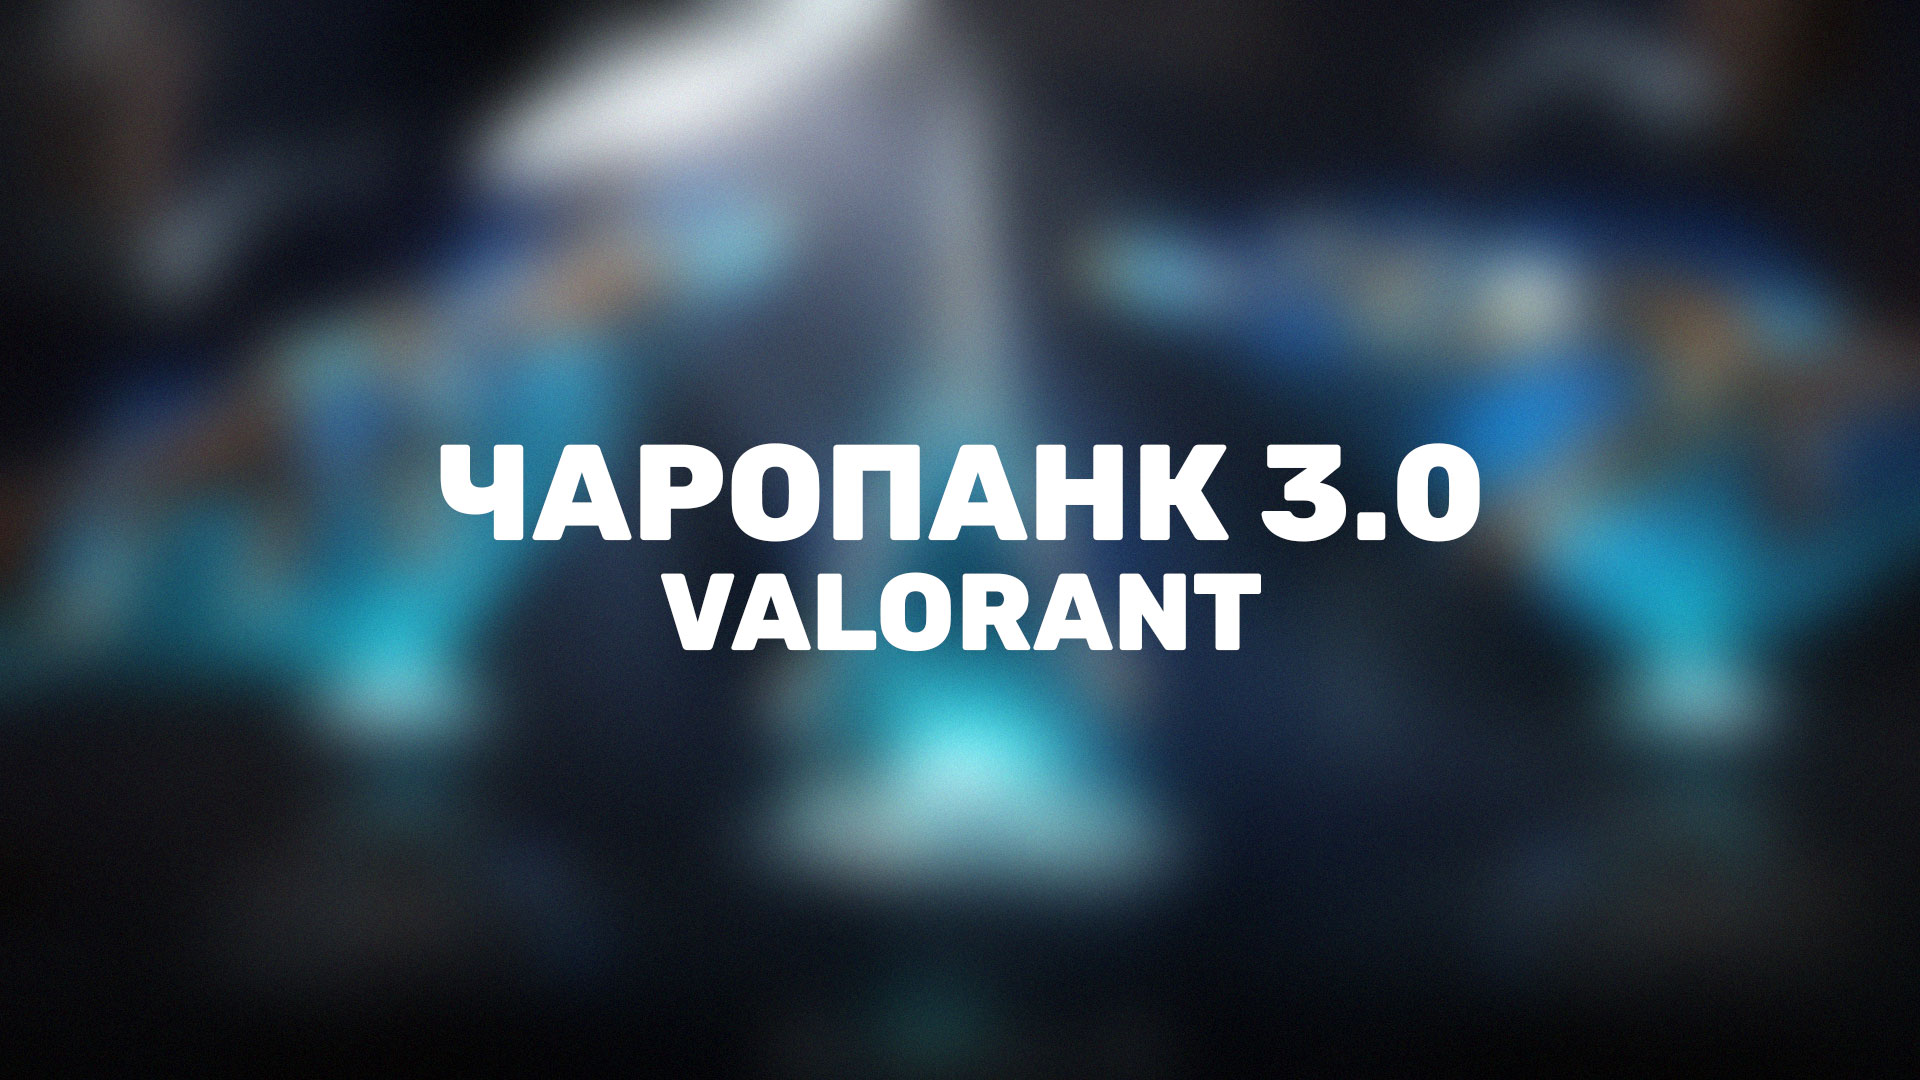 В Valorant, вместе с новым патчем, появилась новая версий популярной коллекции скинов «Чаропанк 3.0».